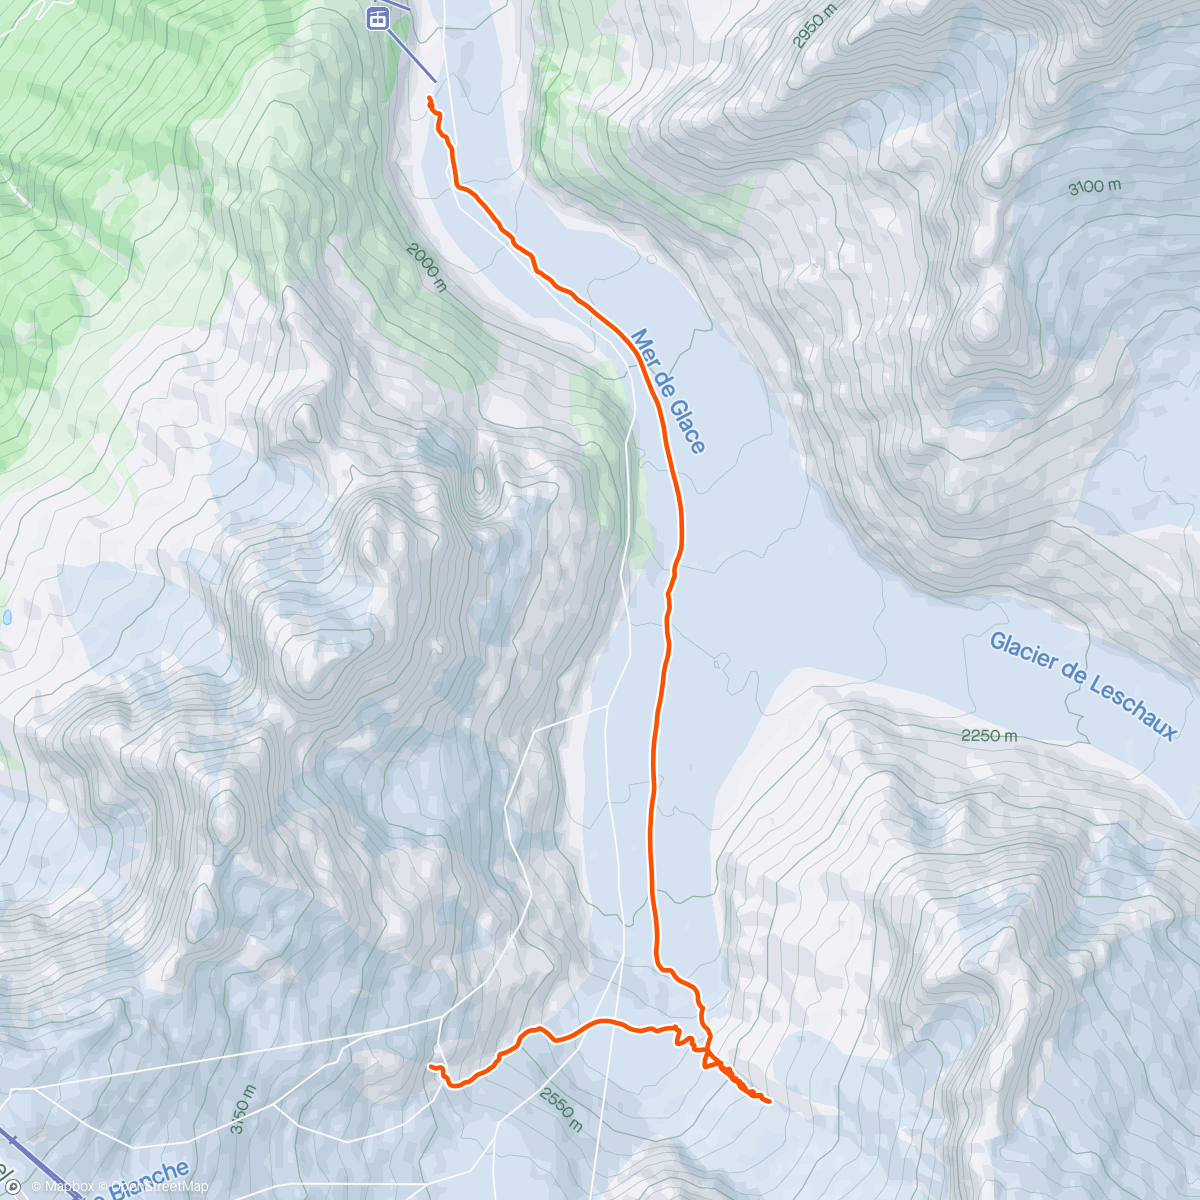 Mapa da atividade, Valleé Blanche & Périades Glacier